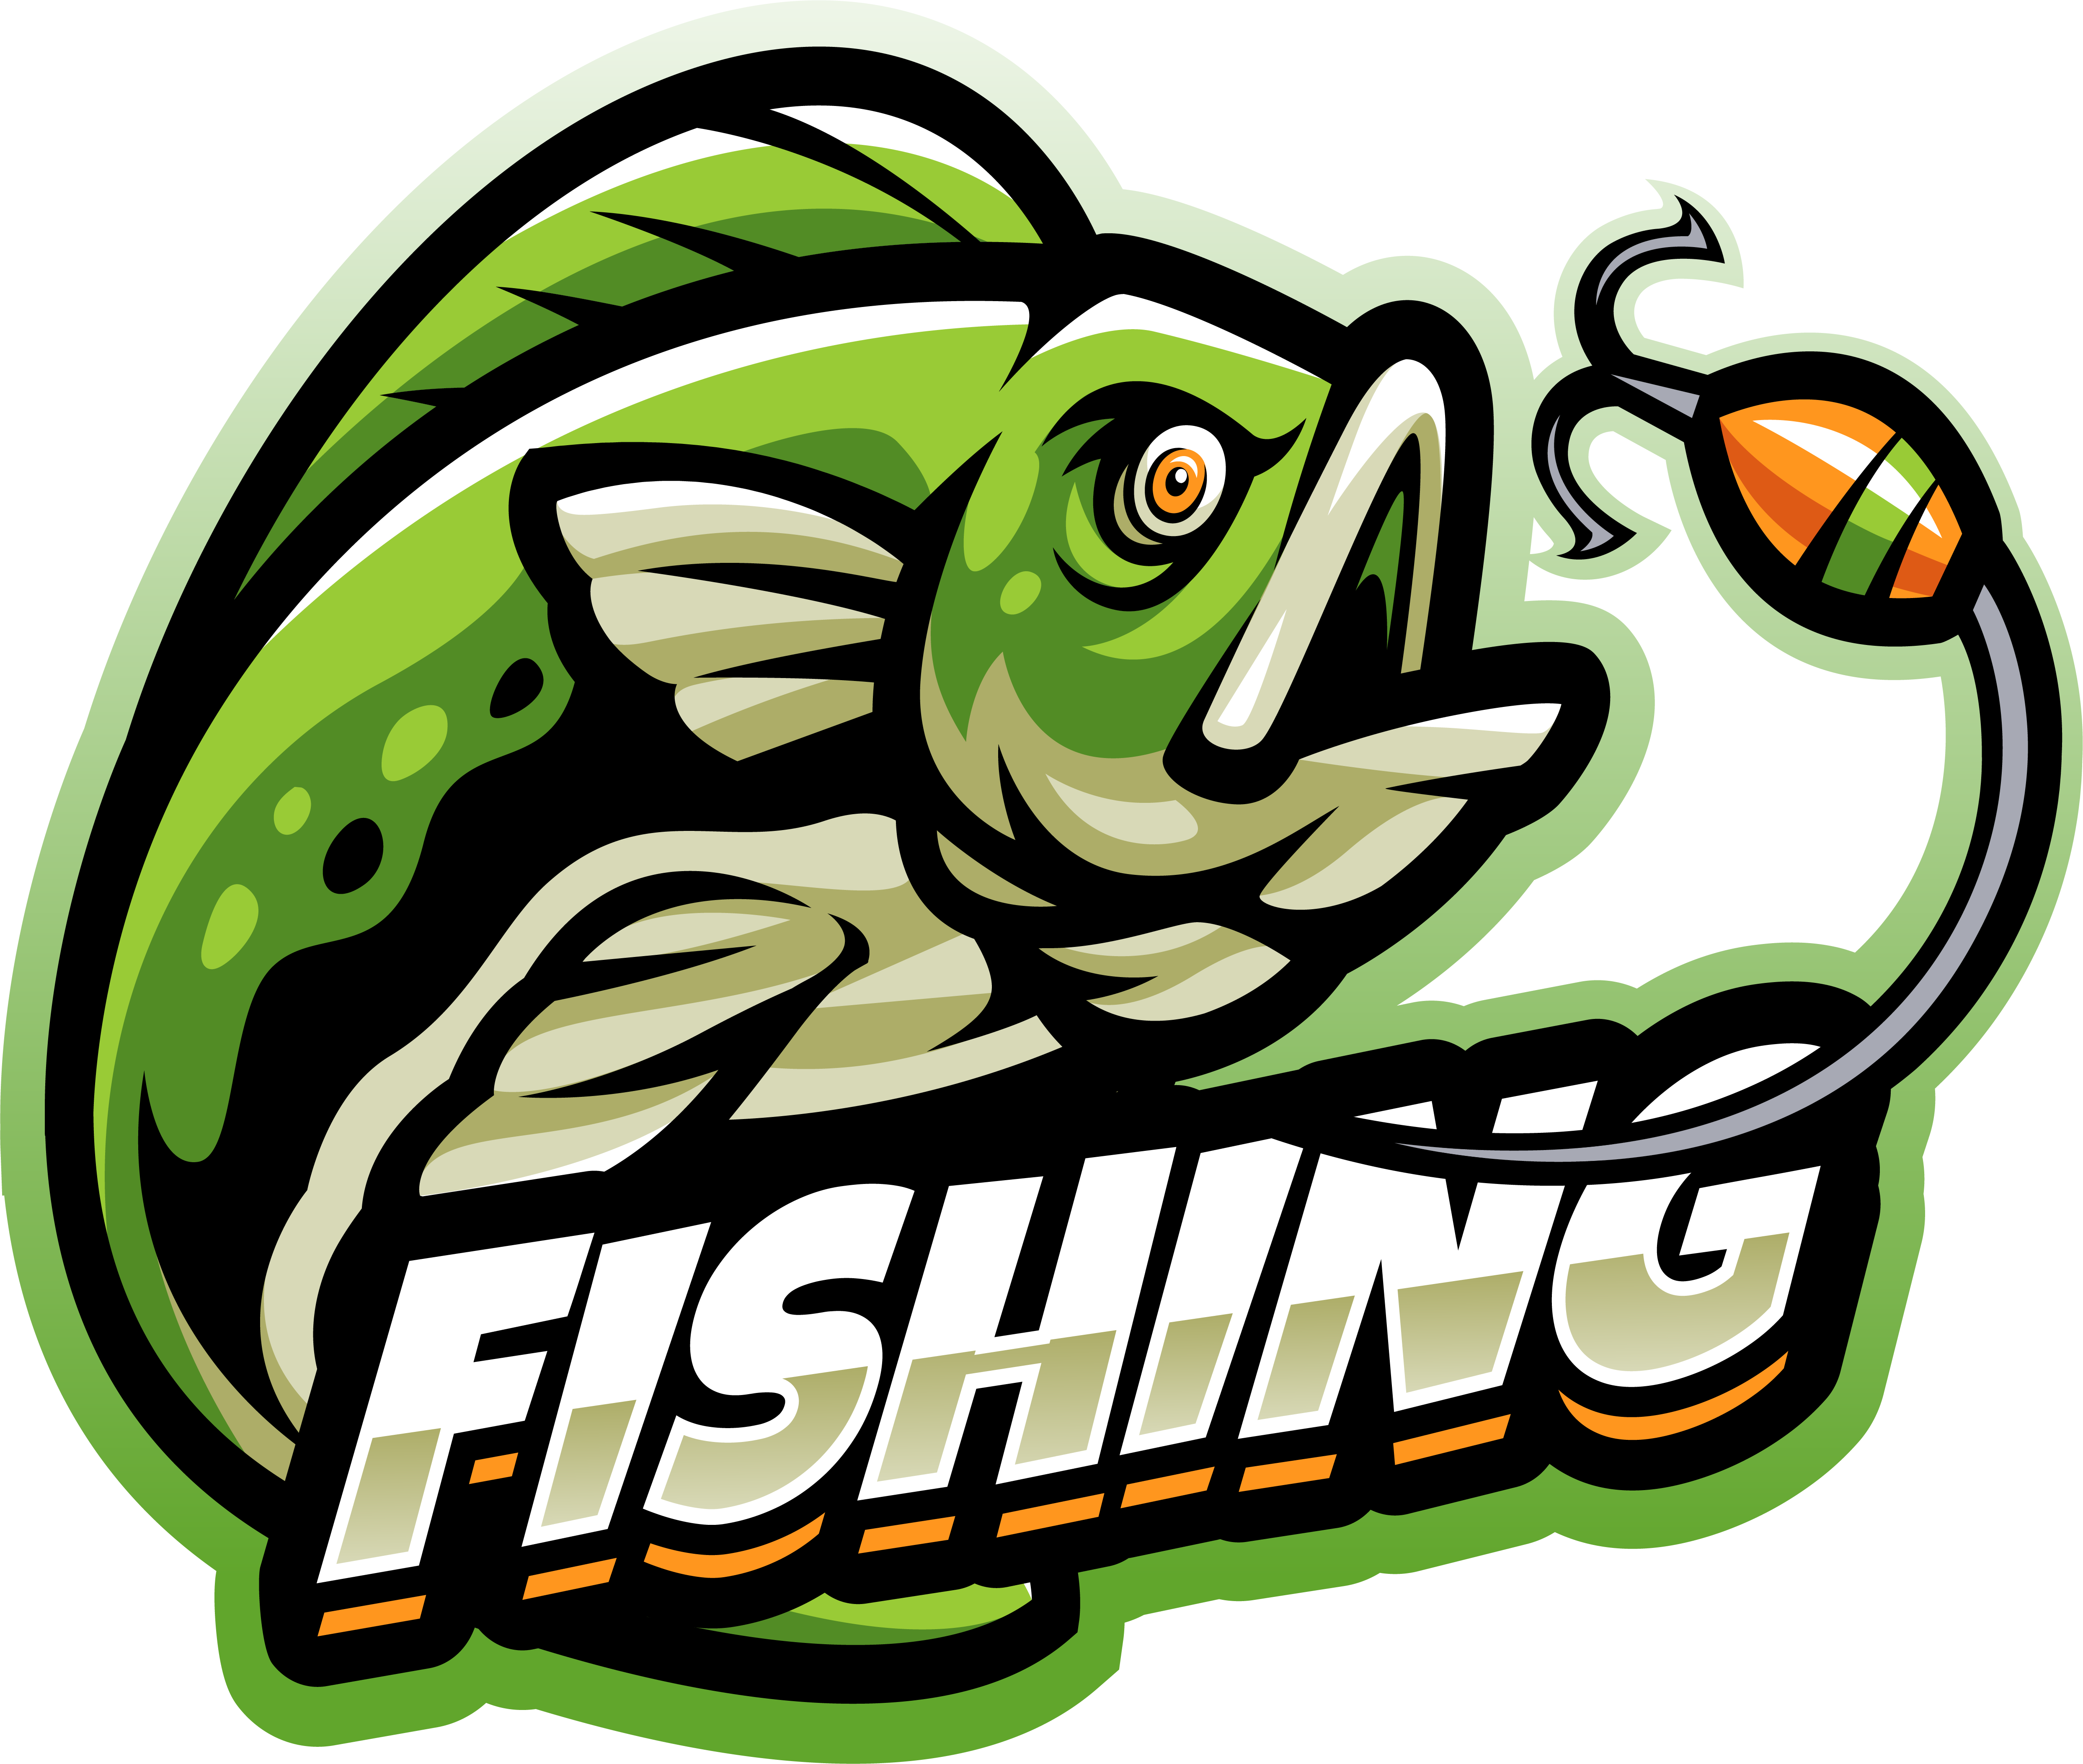 Premium Vector, Vector style bass fishing kids mascot